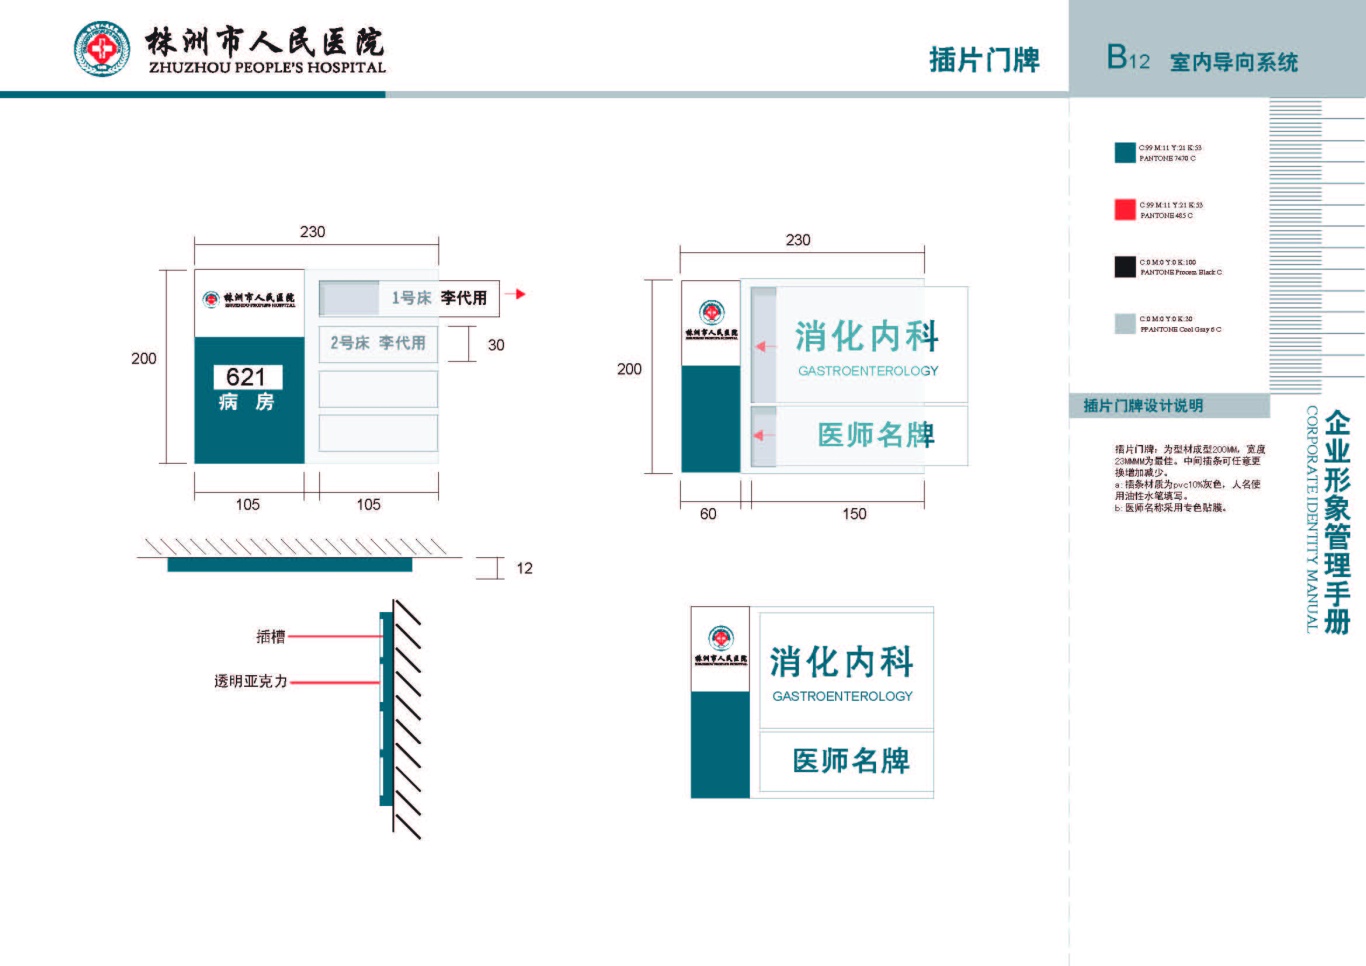 株洲市人民医院vis手册设计项目图22